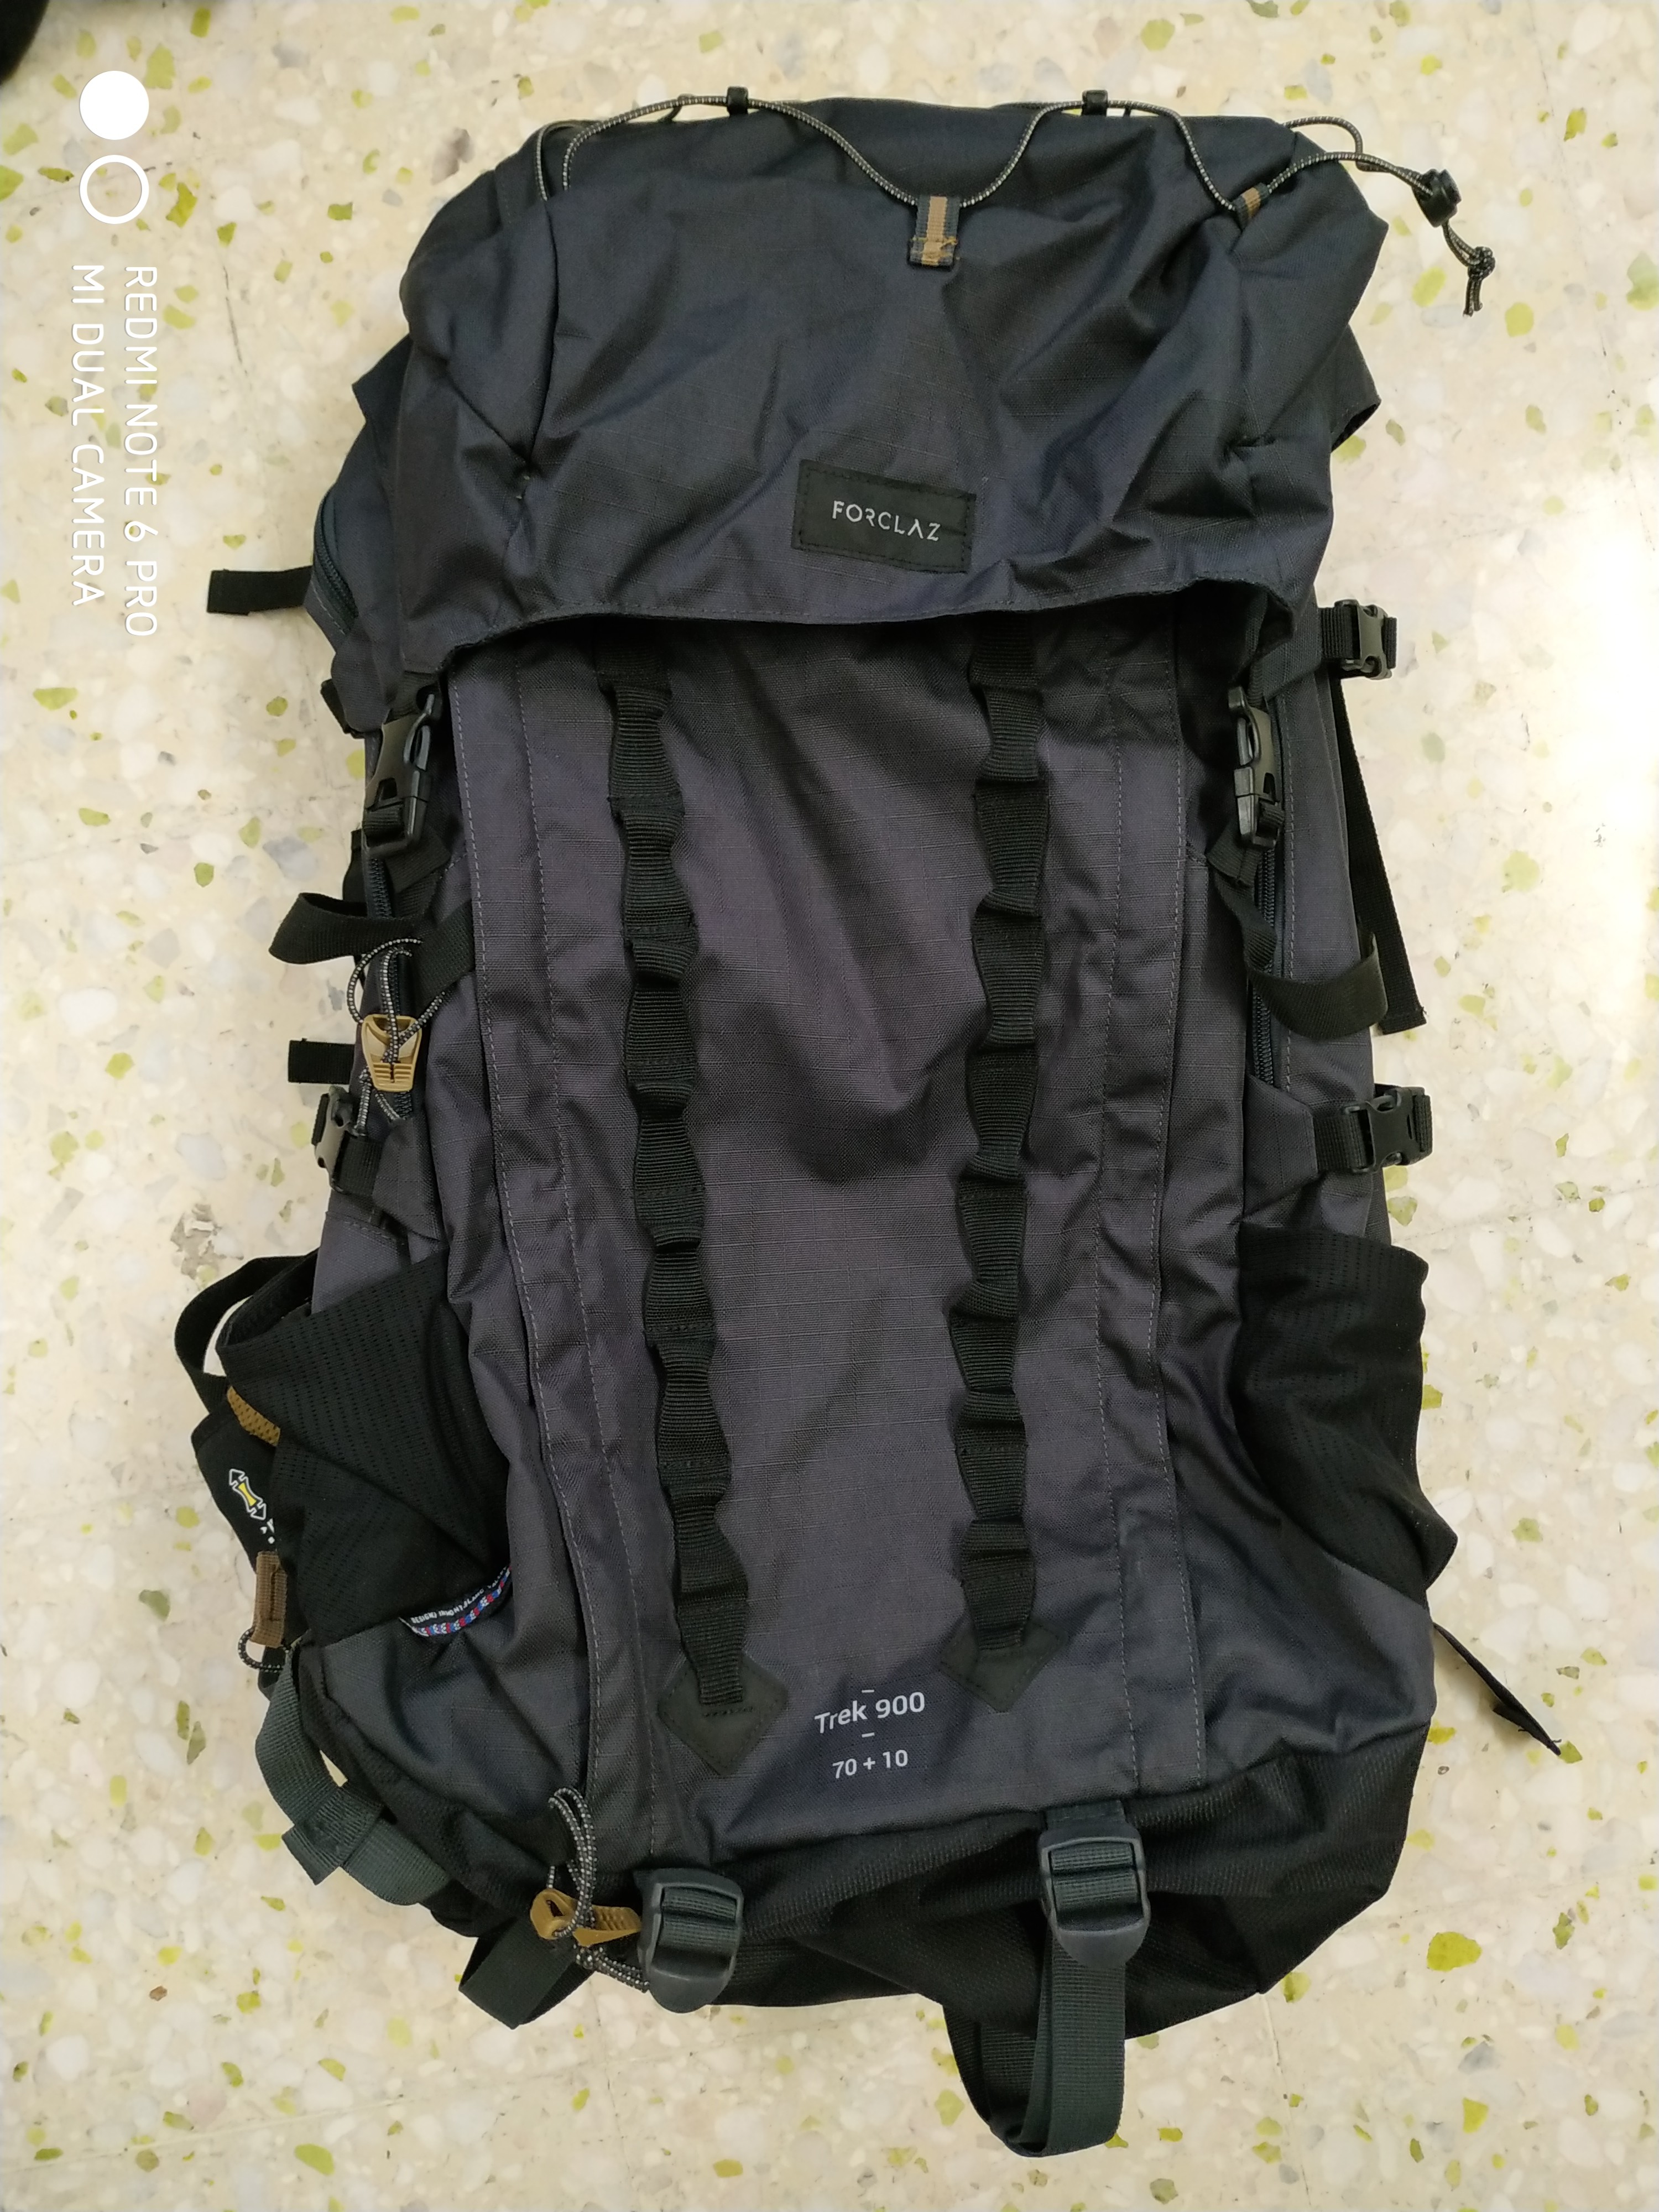 trek 900 backpack